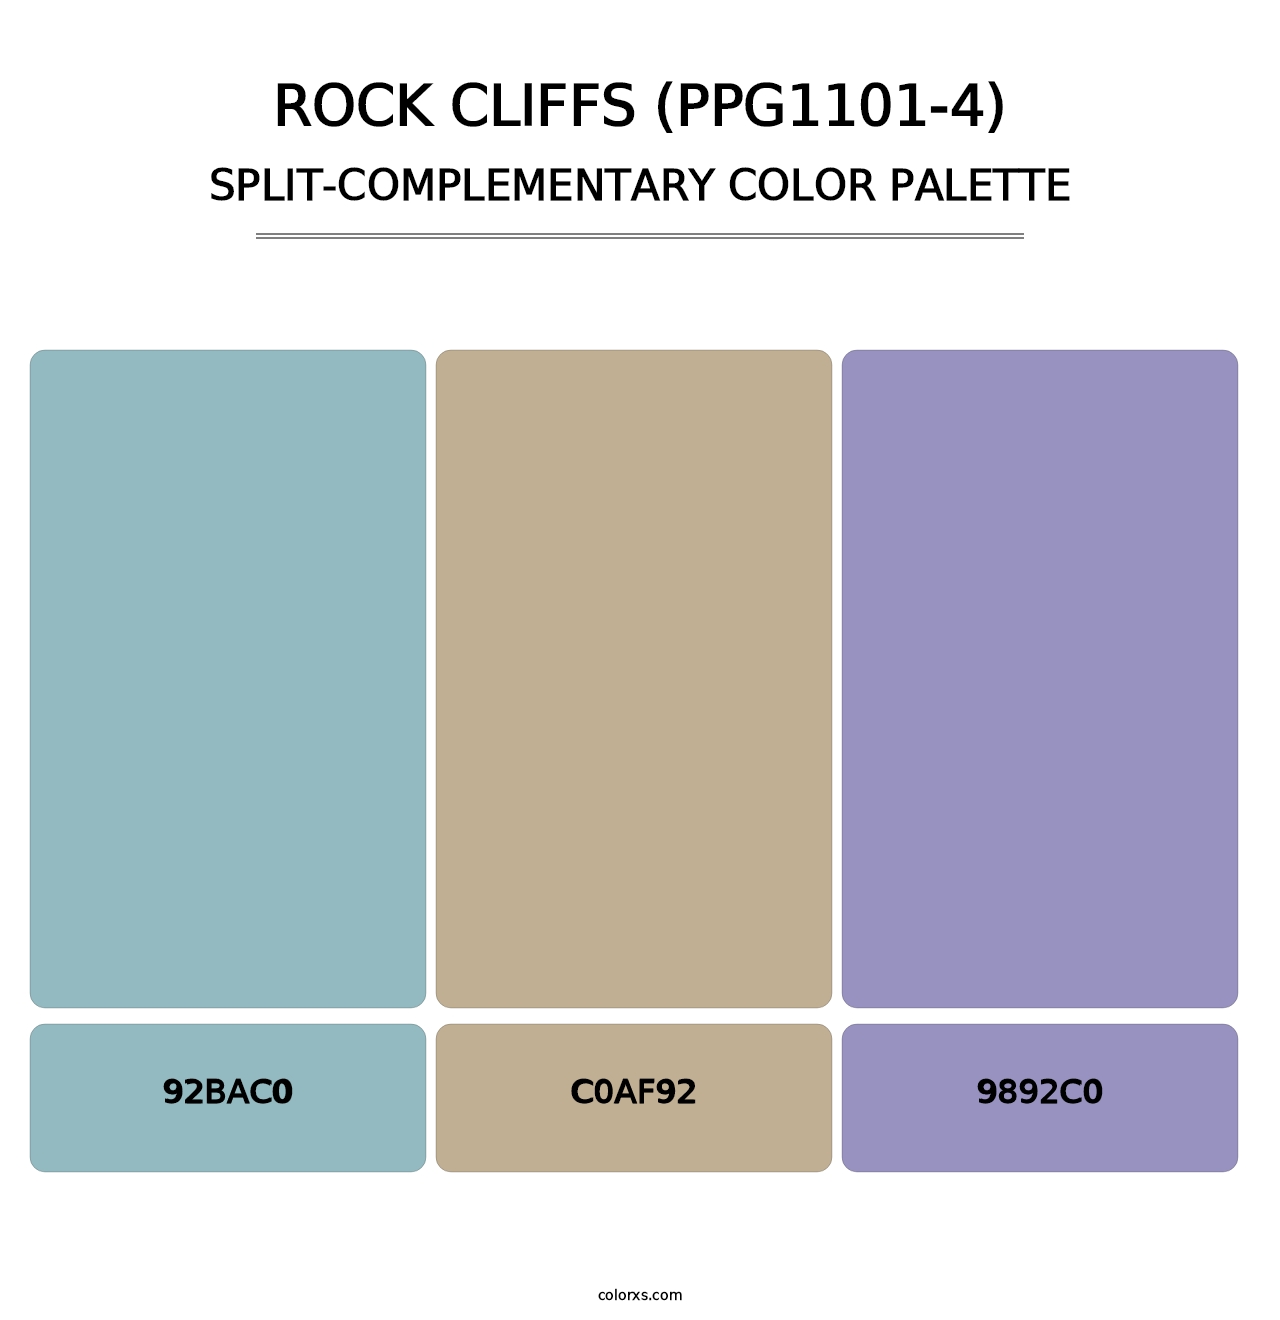 Rock Cliffs (PPG1101-4) - Split-Complementary Color Palette